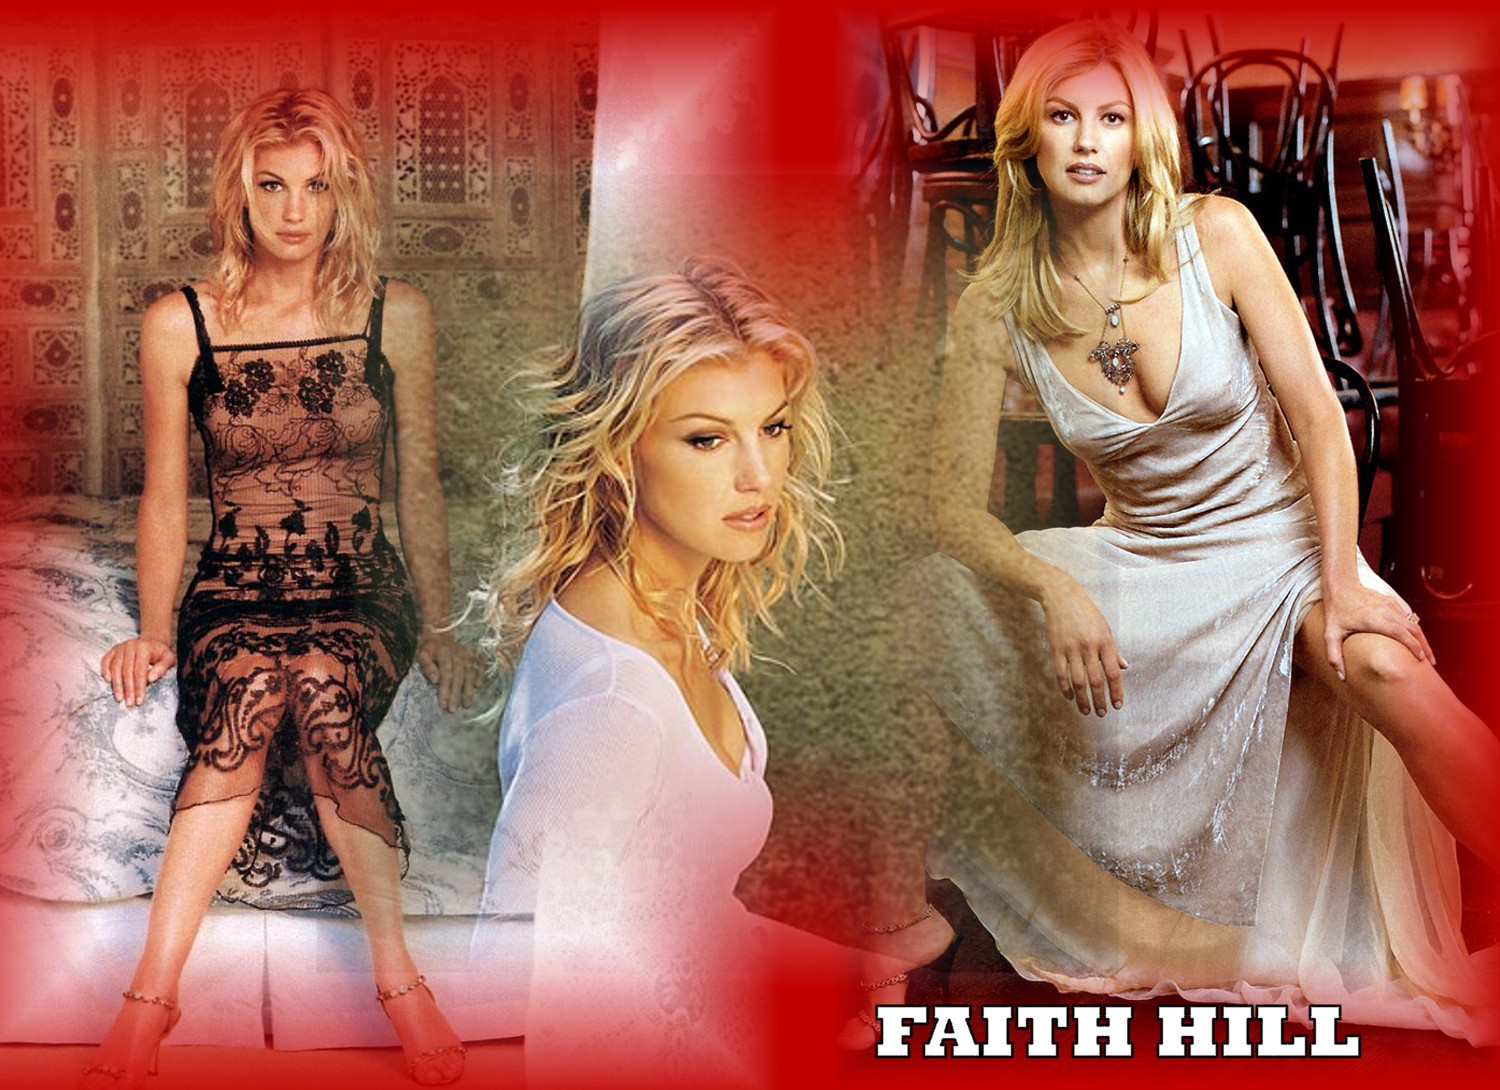 Faith hill 15